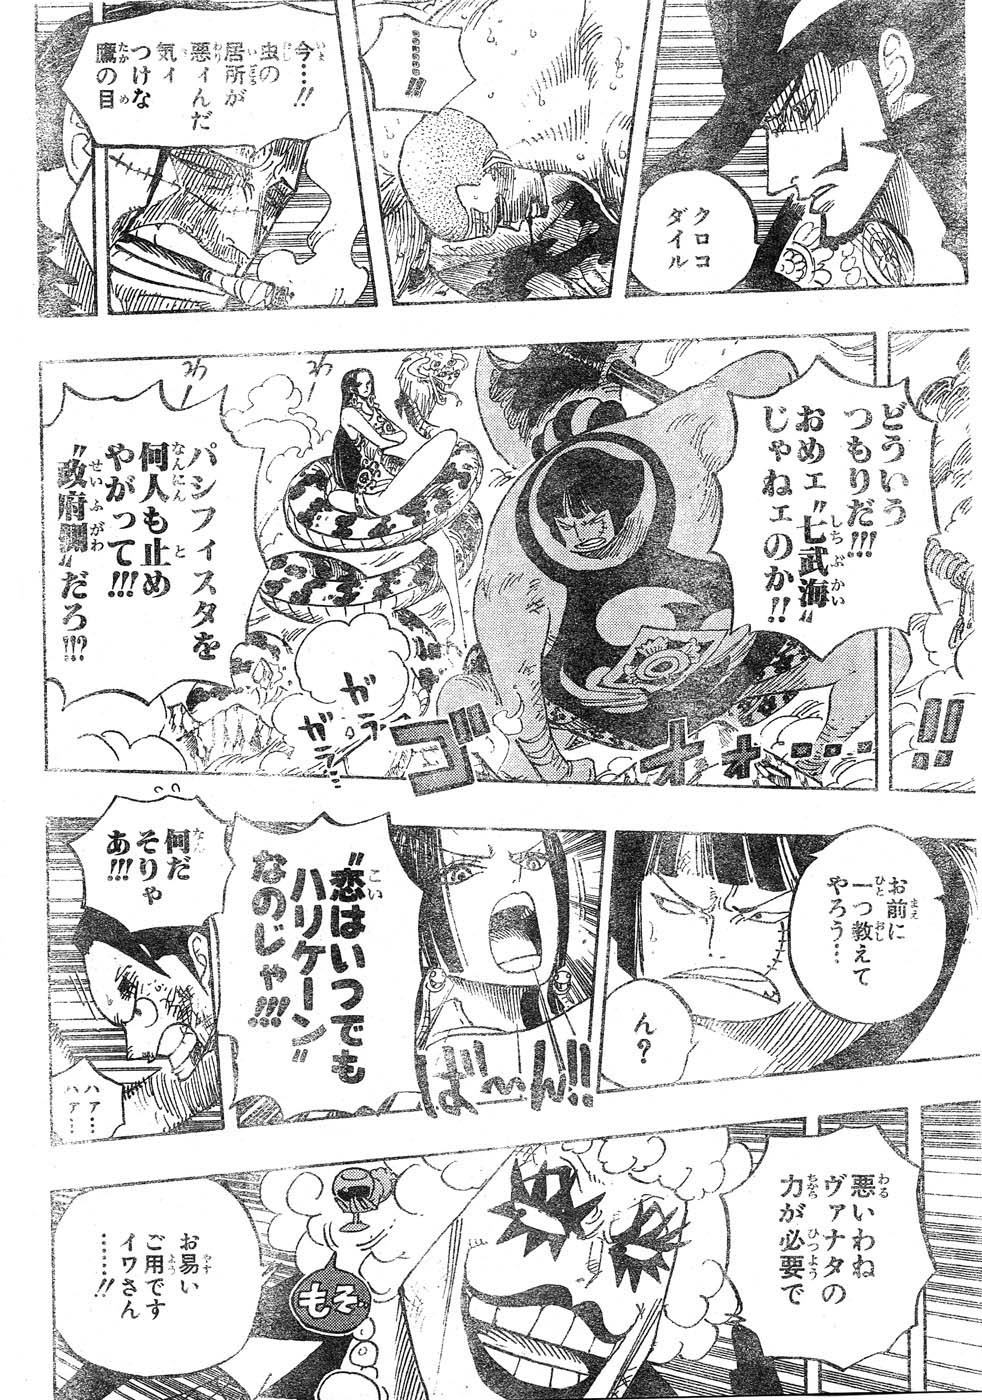 ワンピース One Piece 第570話 命の懸橋 ネタバレ感想 しあわせのマテリア